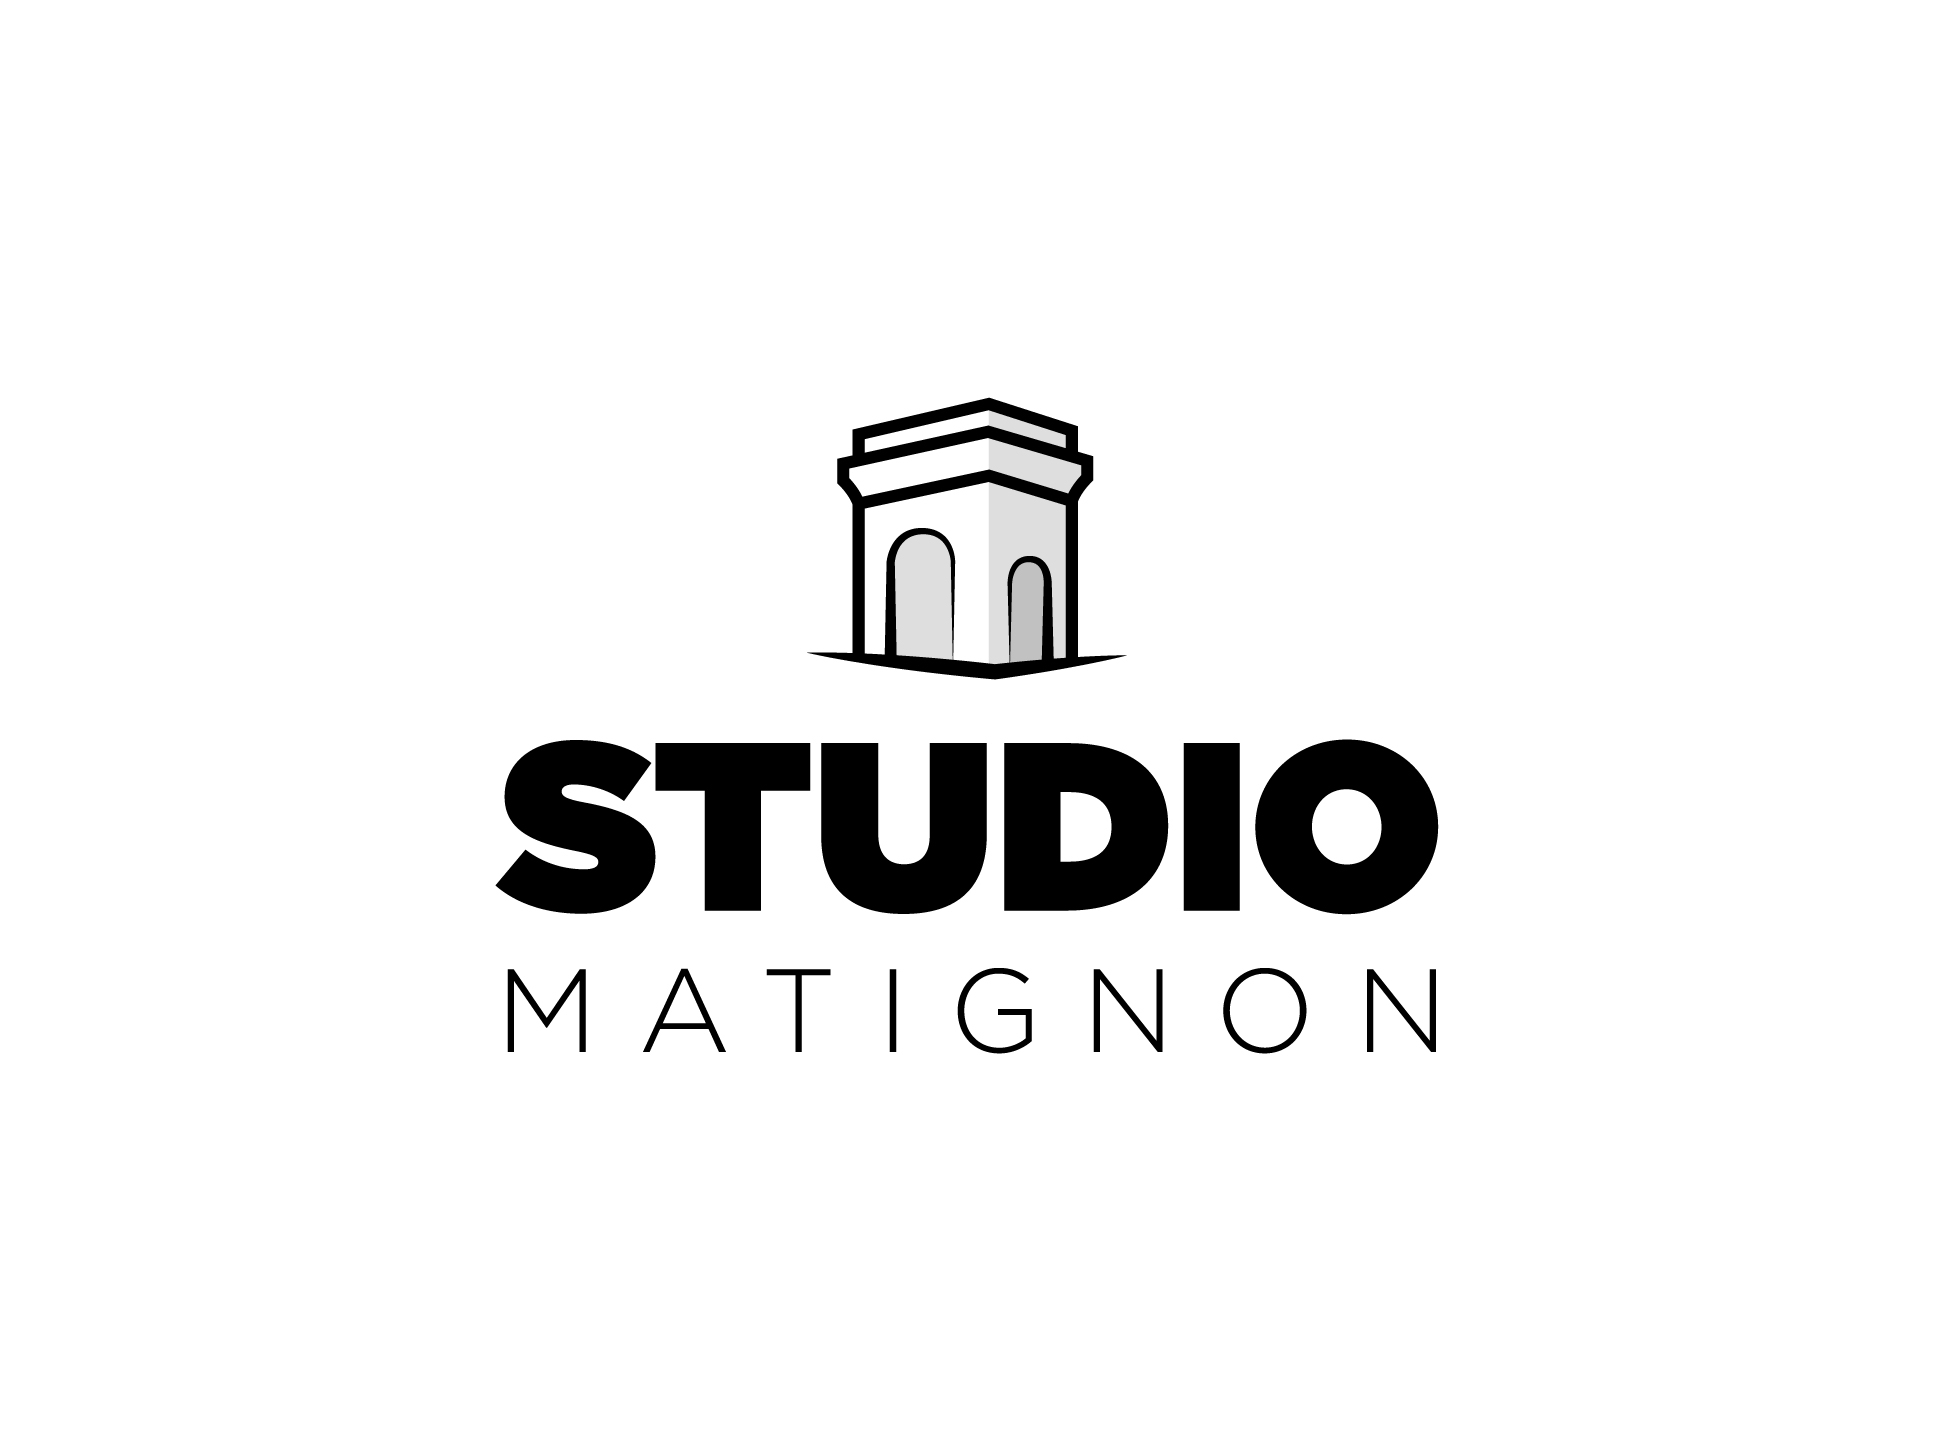 Studio Matignon